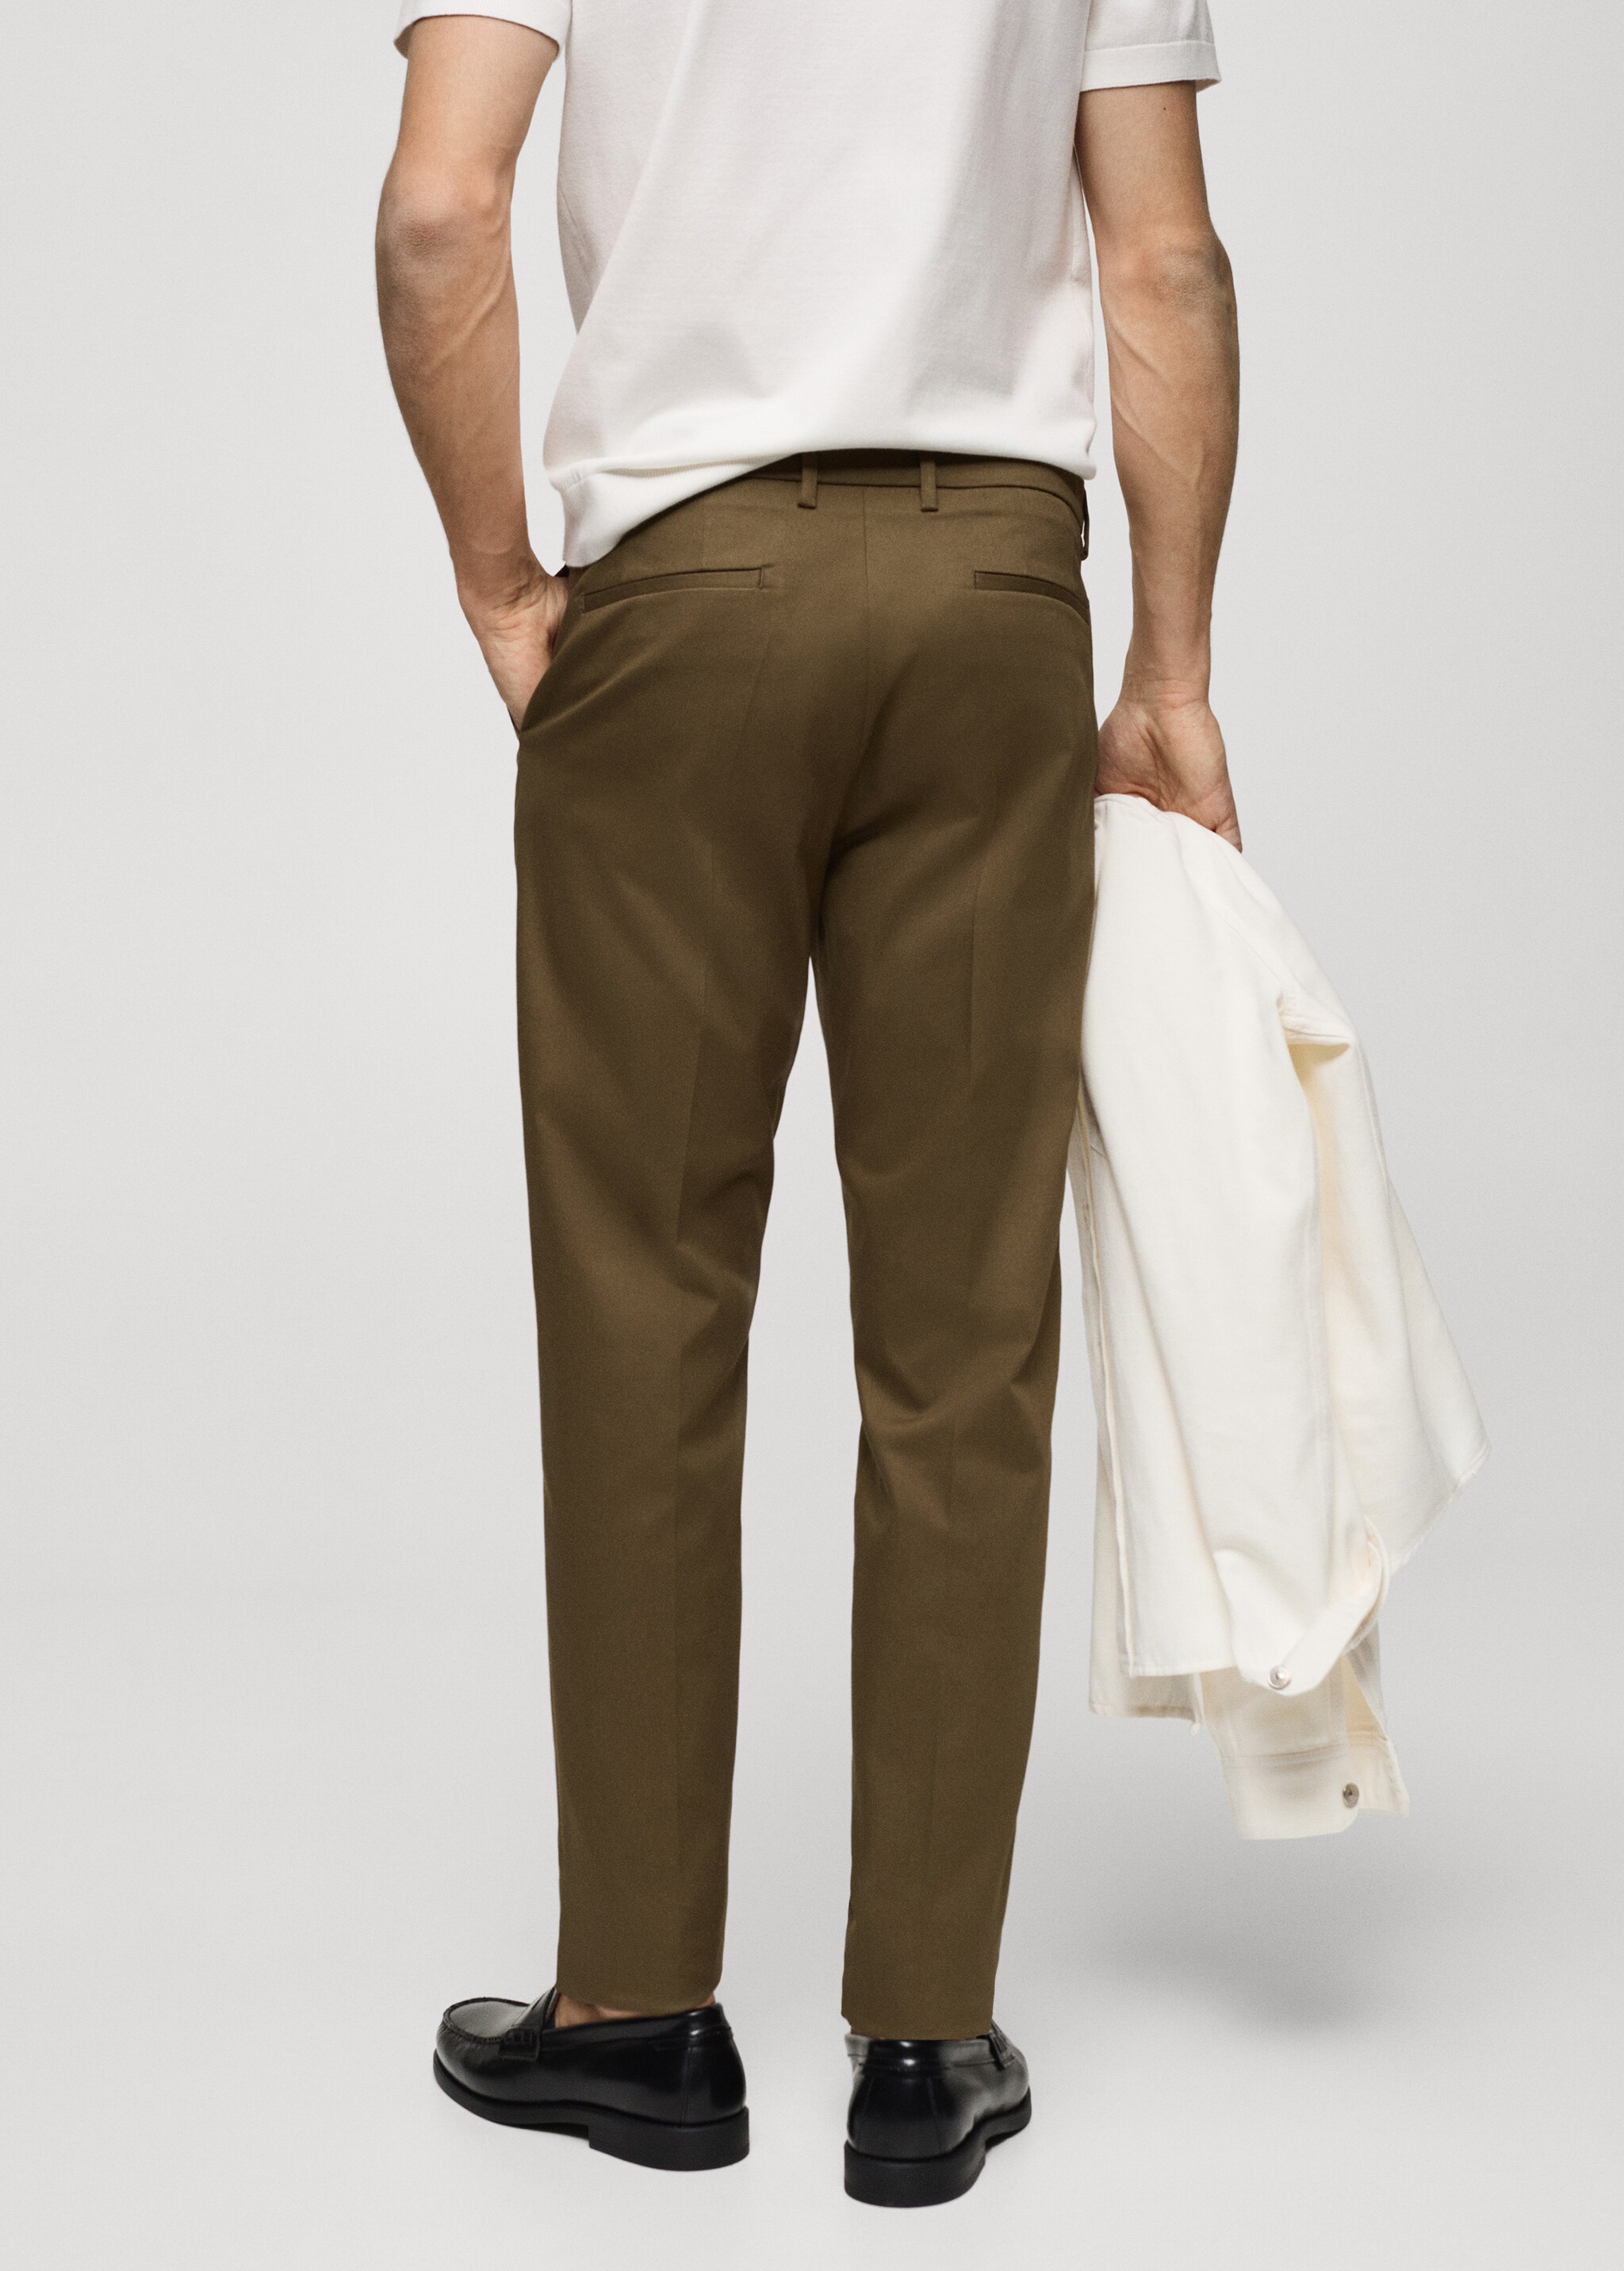 Pantalón chino slim fit - Reverso del artículo